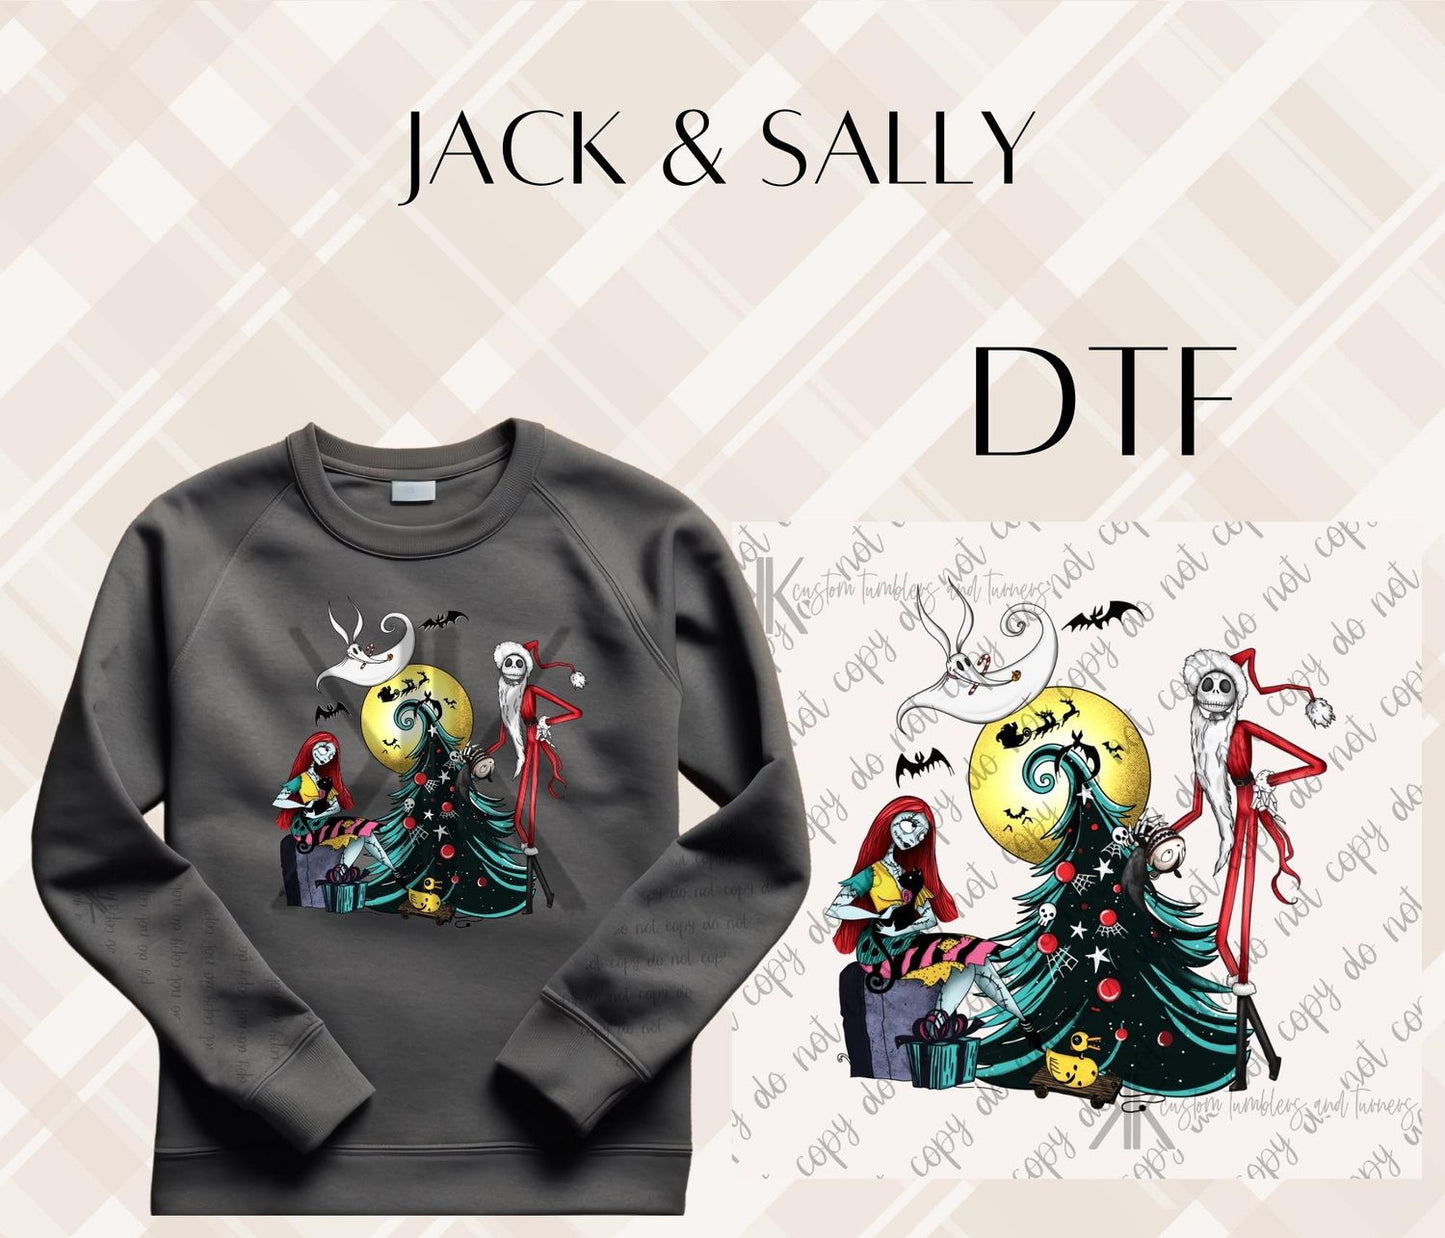 JACK & SALLY DTF/UVDTF (POCKET & SLEEVE OPTIONS AVAIL)